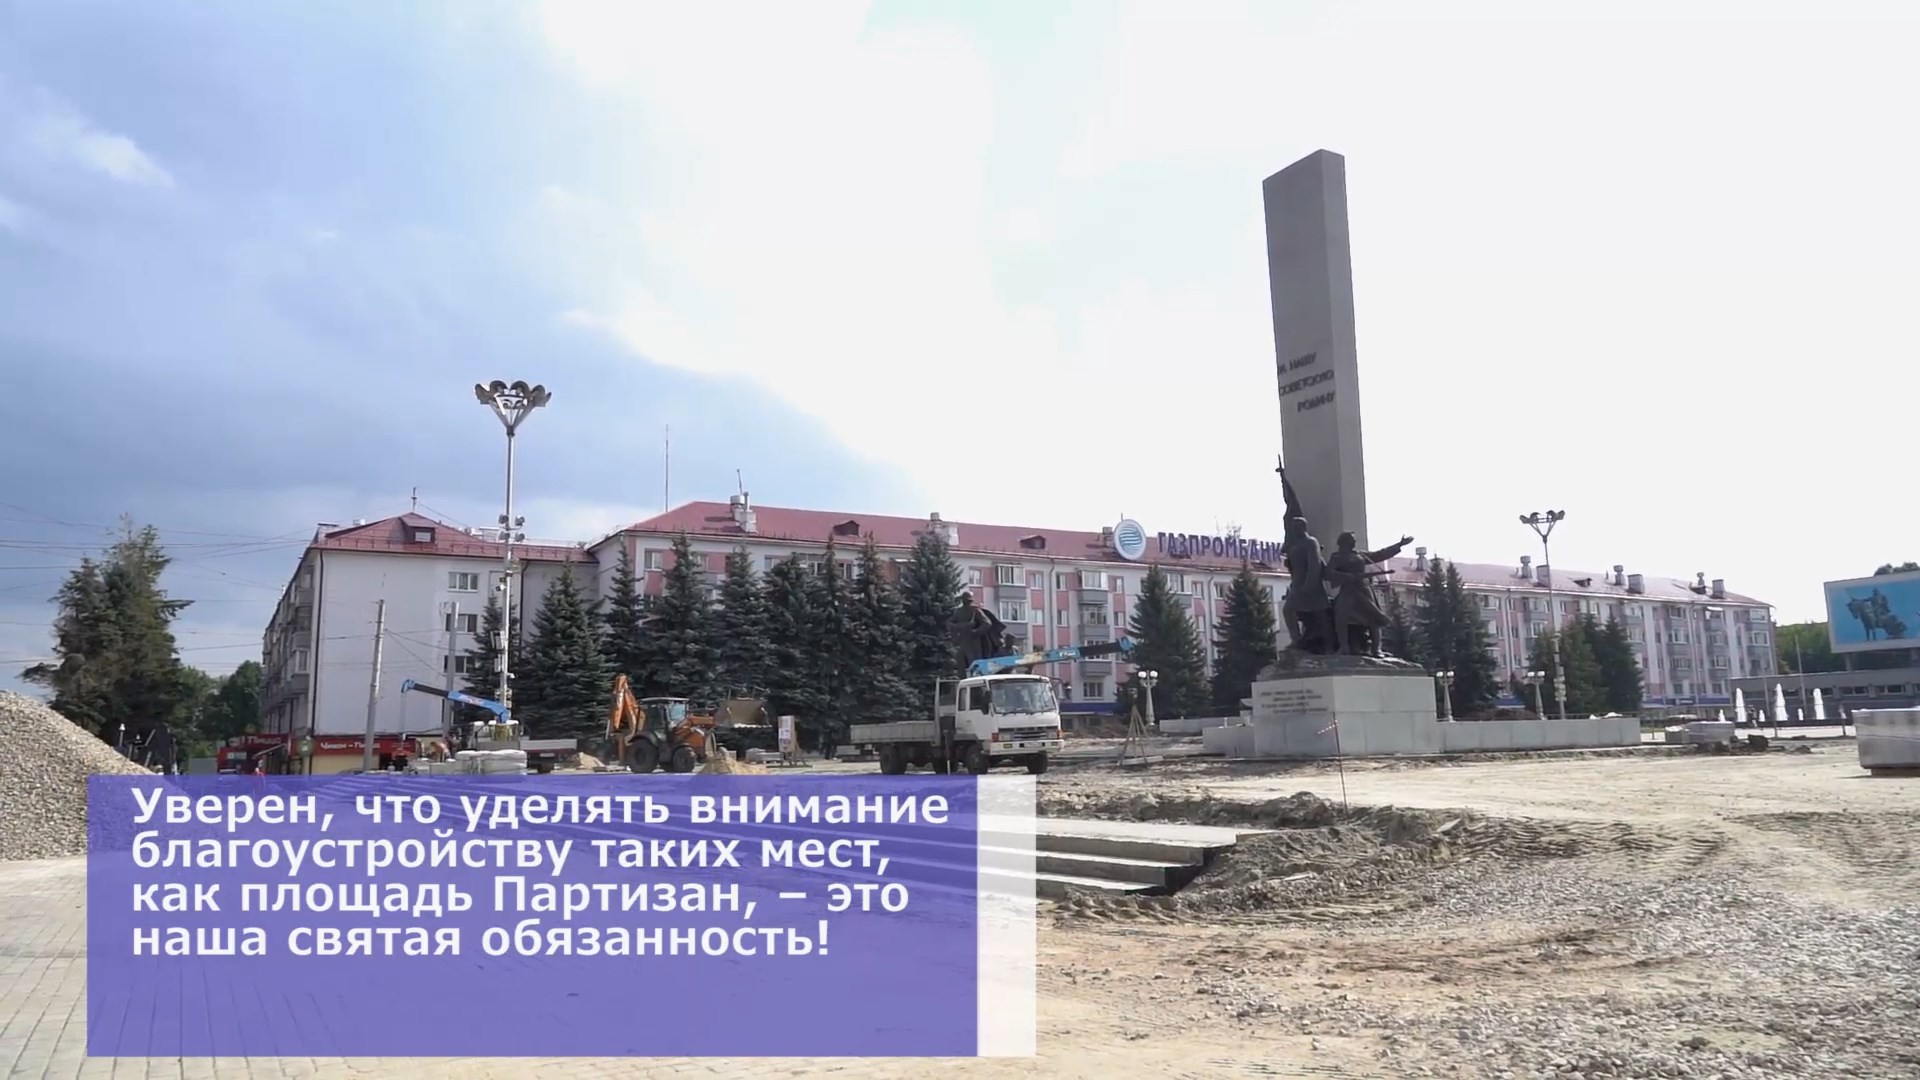 Ко Дню города в Брянске отремонтируют лицевую часть памятника на площади Партизан